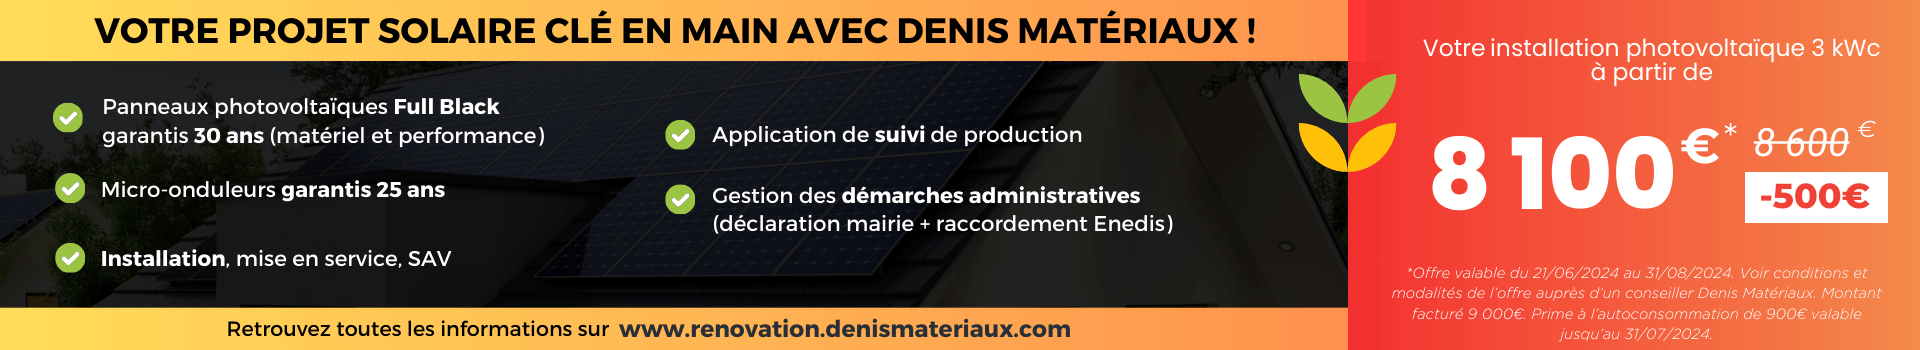 Offre panneaux photovoltaïques en promotion chez Denis Matériaux